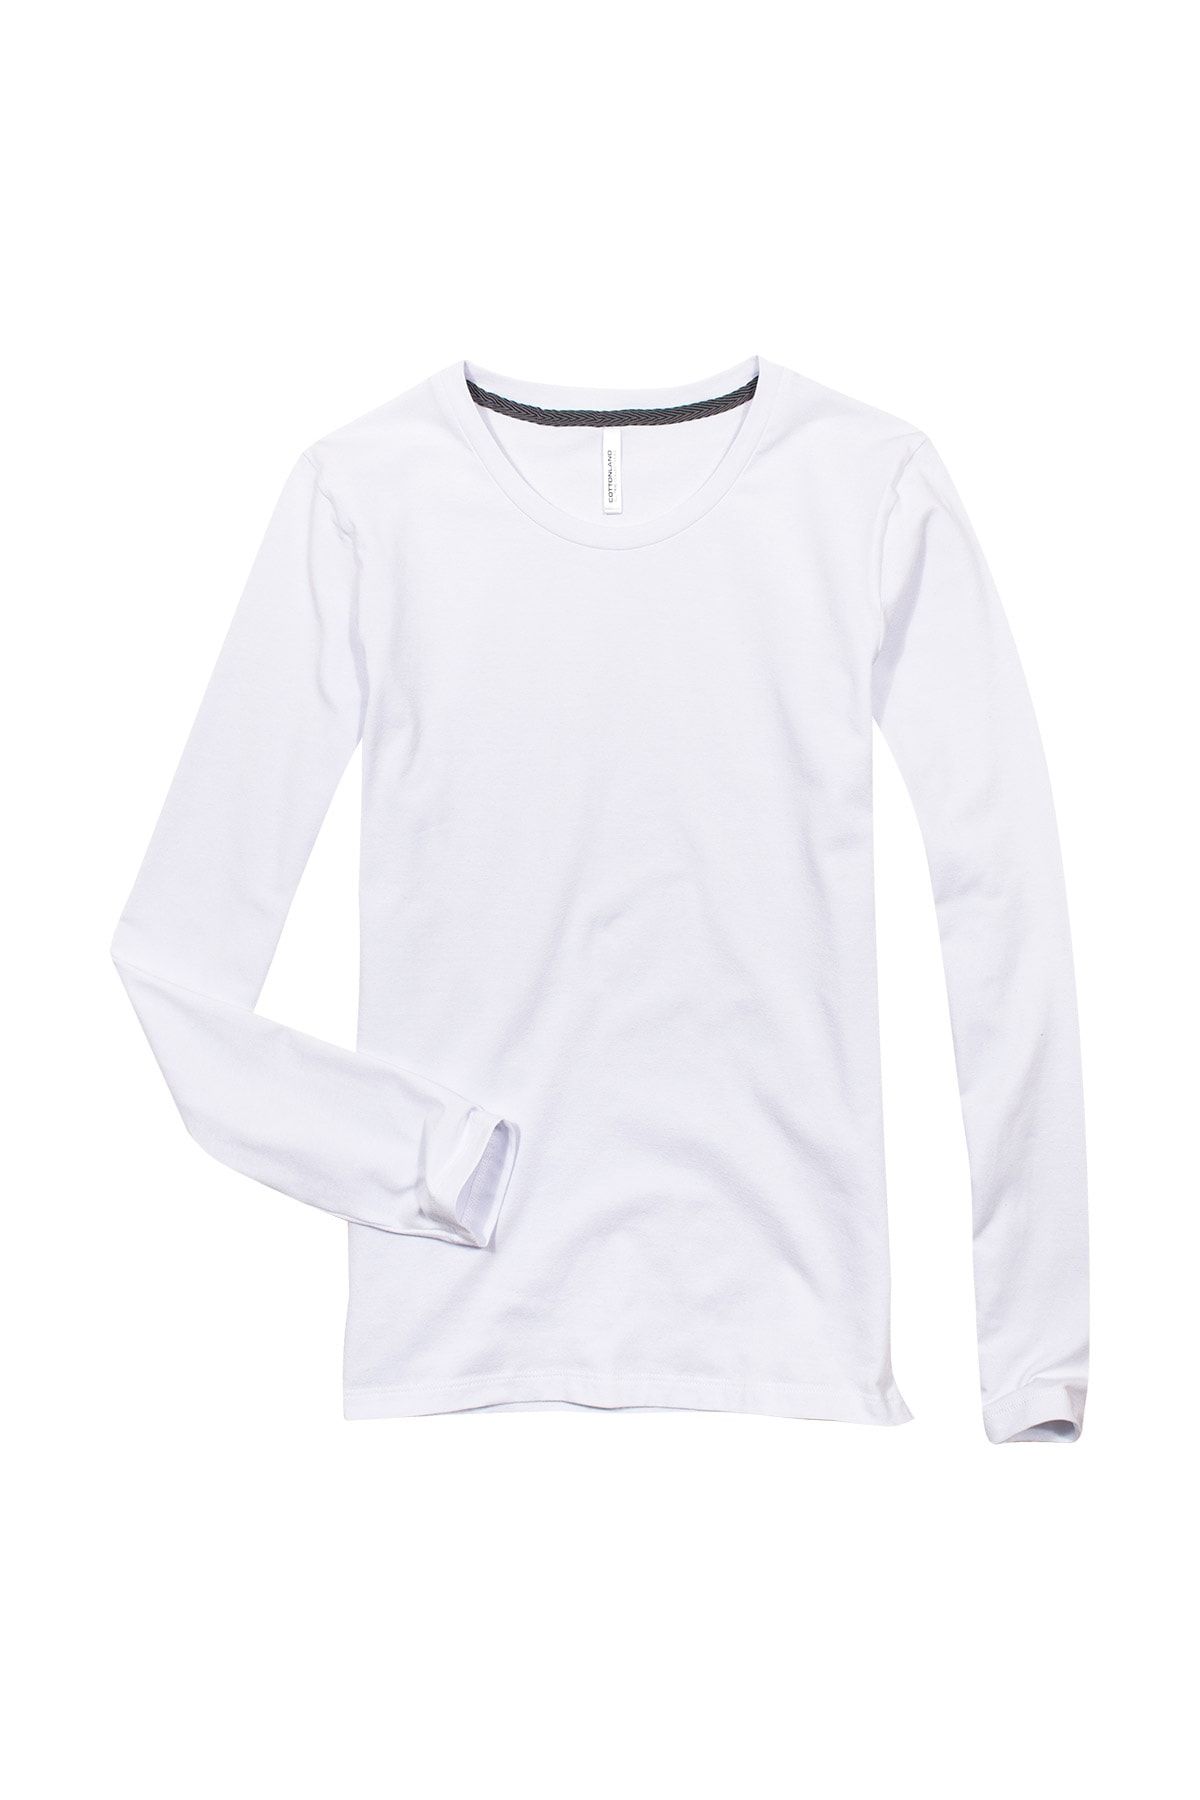 CottonLand Kadın Beyaz Likra Uzun Kollu O Yaka T-Shirt